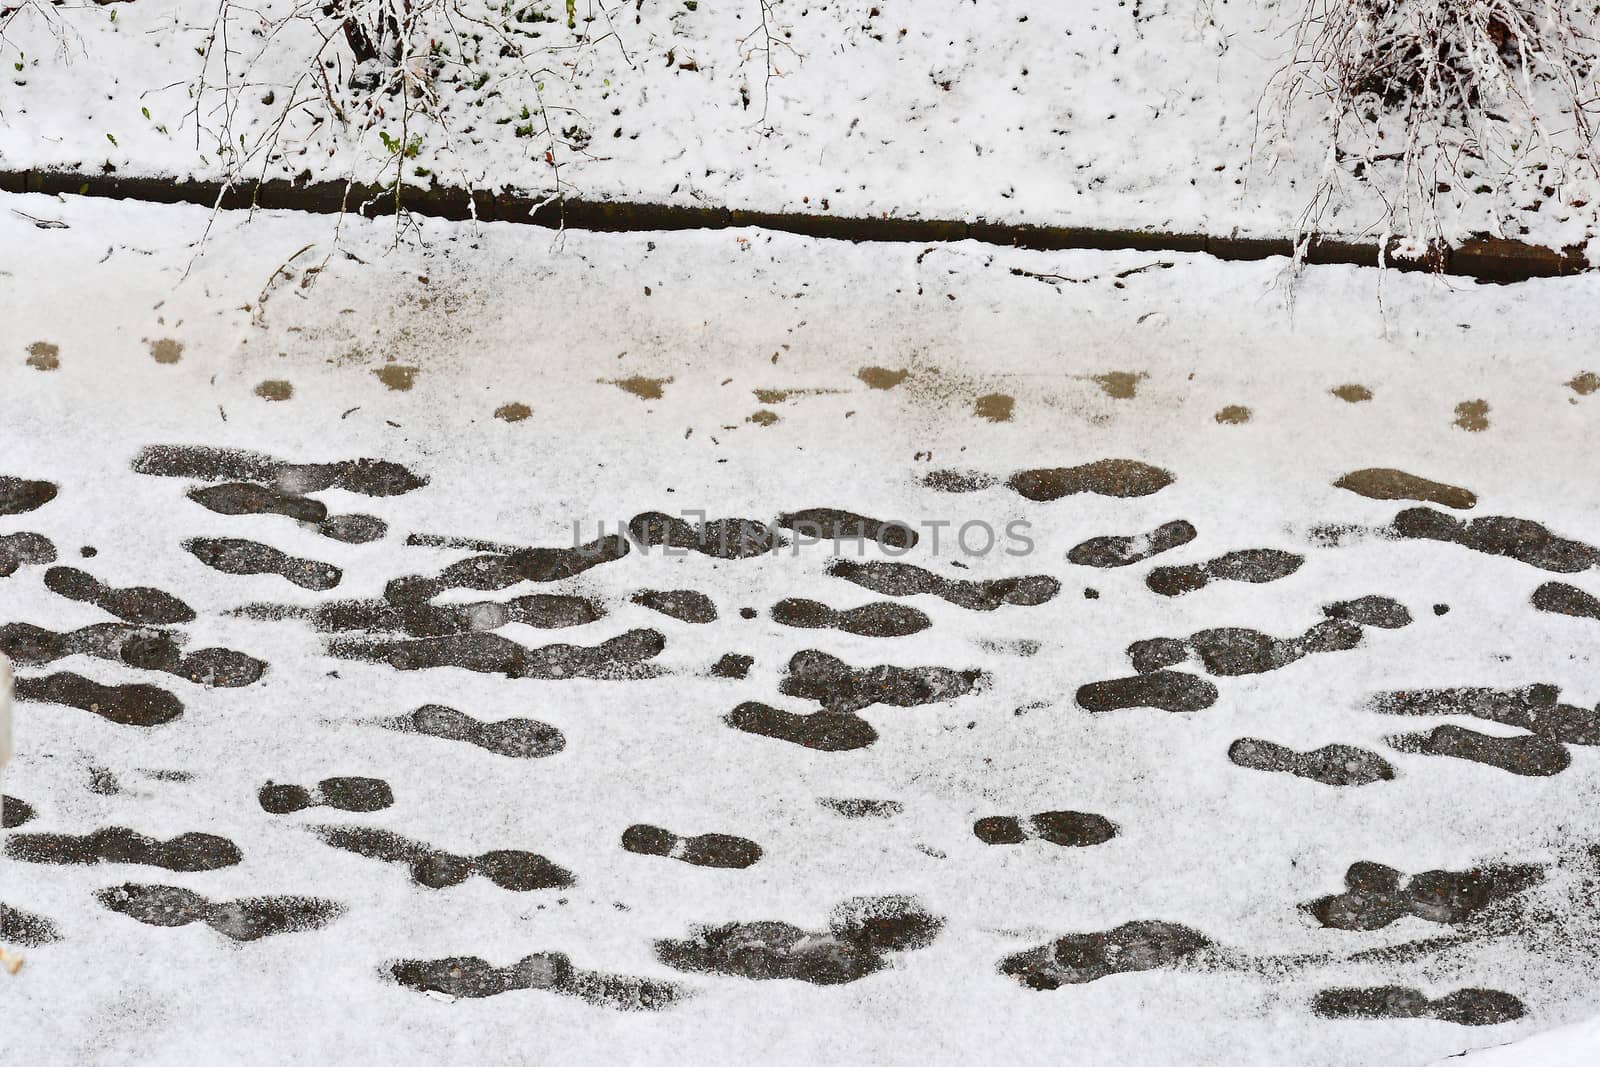 snowy sidewalk with a footprints